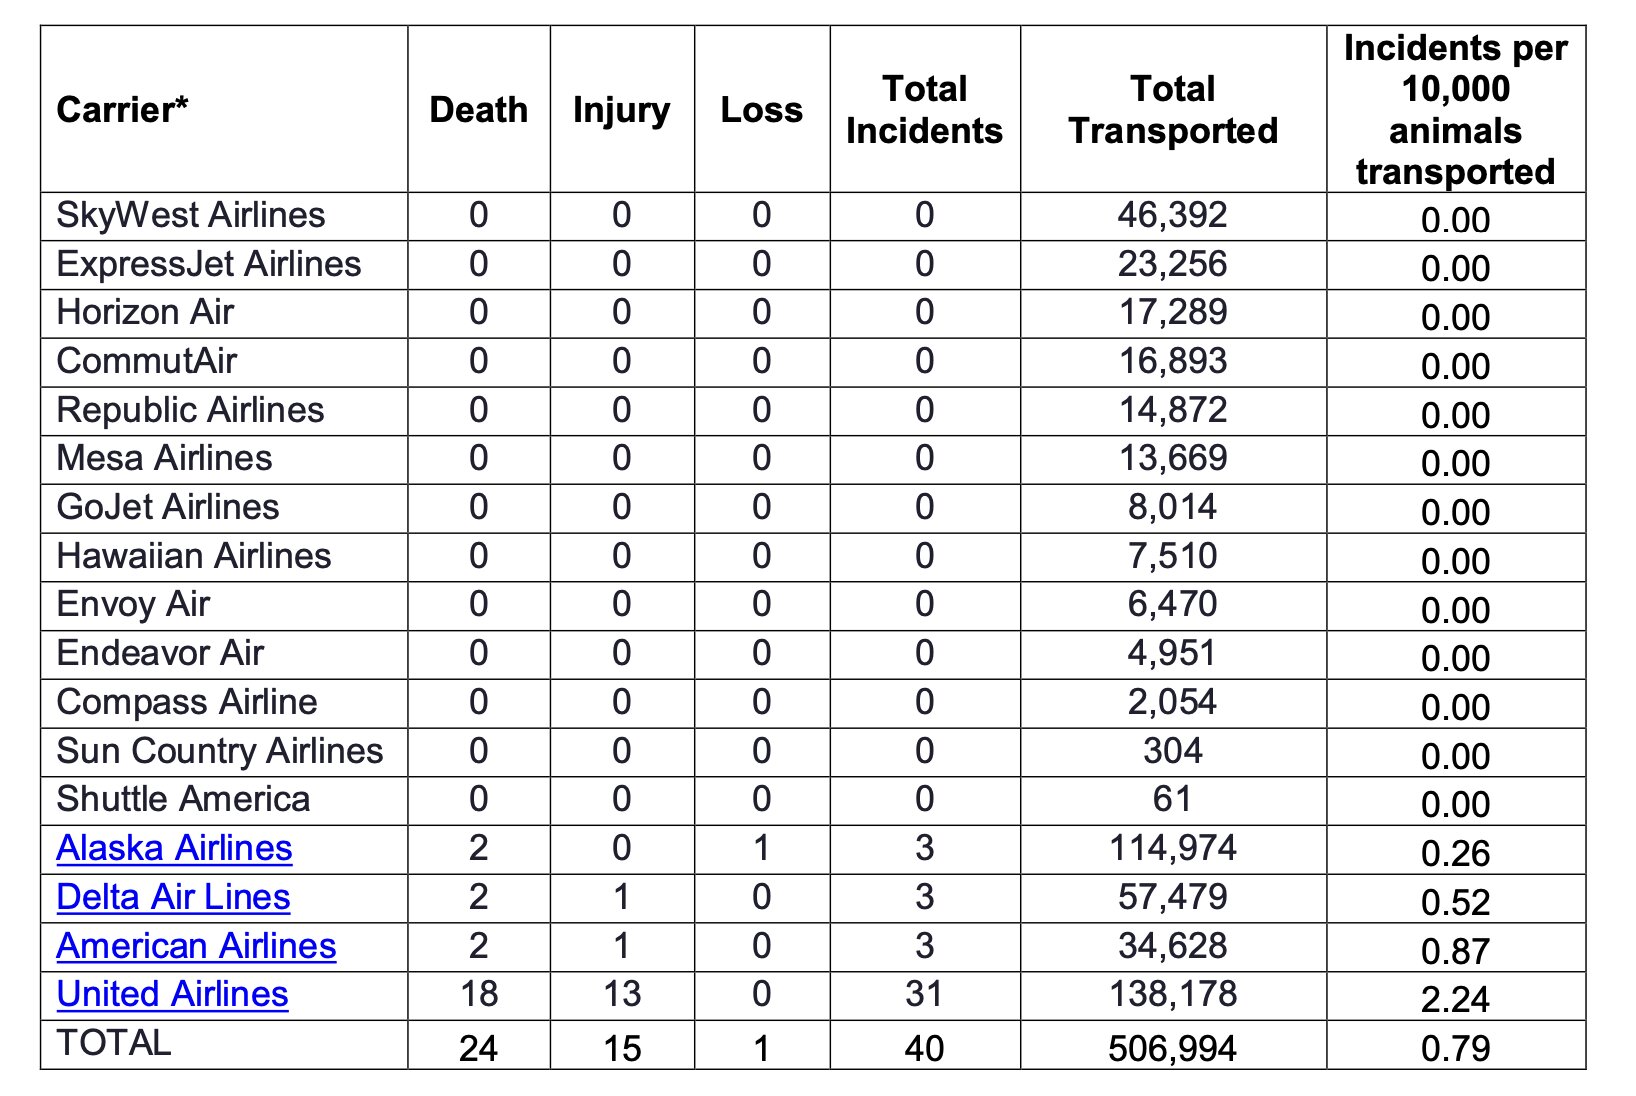 エアライン別に、輸送中の動物の死亡数、負傷数、逃走数が示されている。出典：Department of Transportation